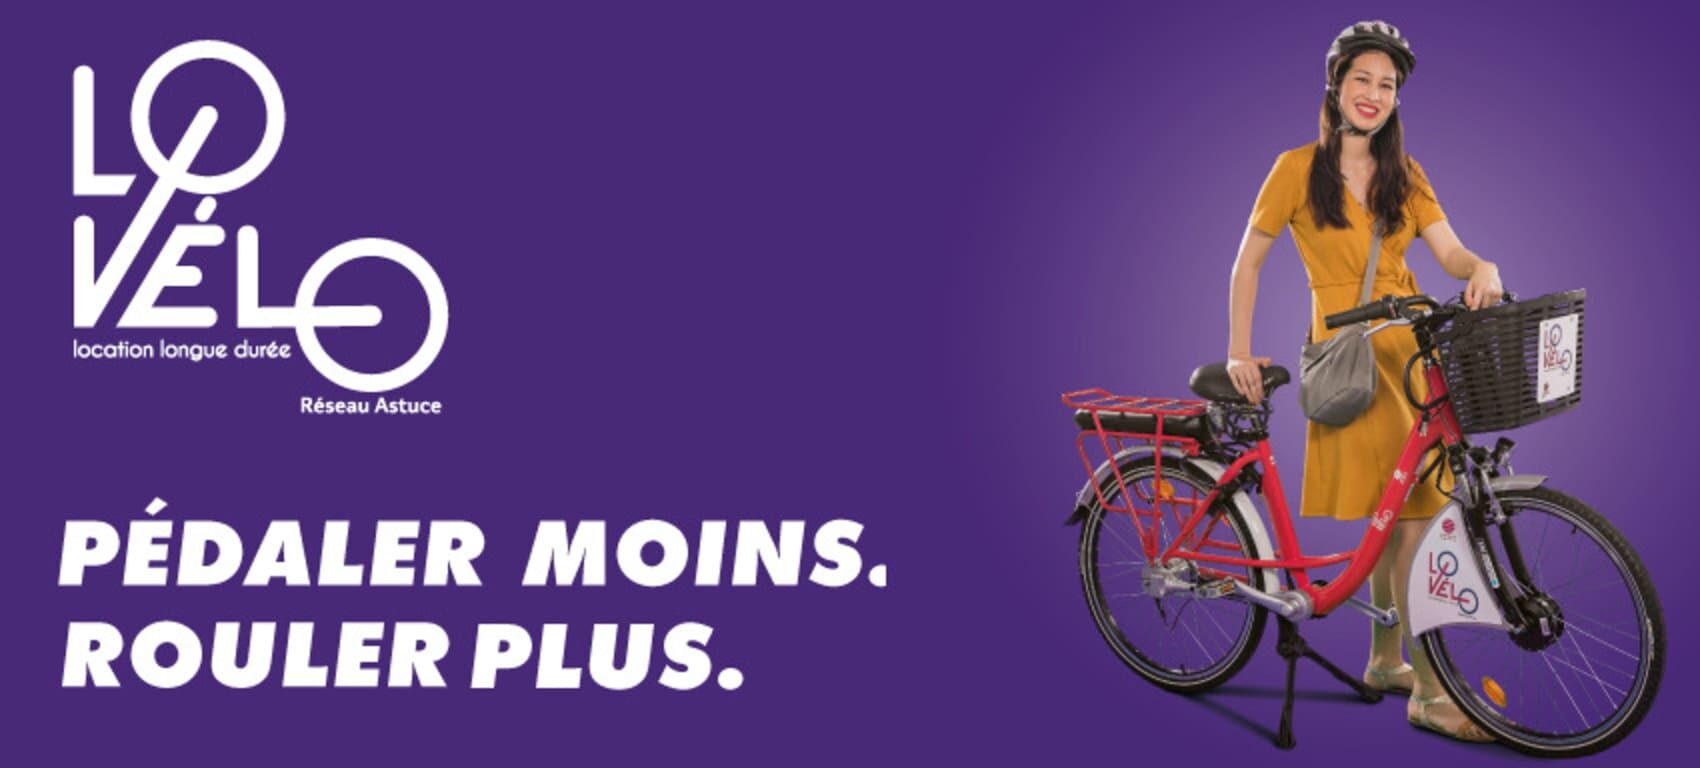 lovélo acceuil représenté par un fond violet et une femme faisant du vélo